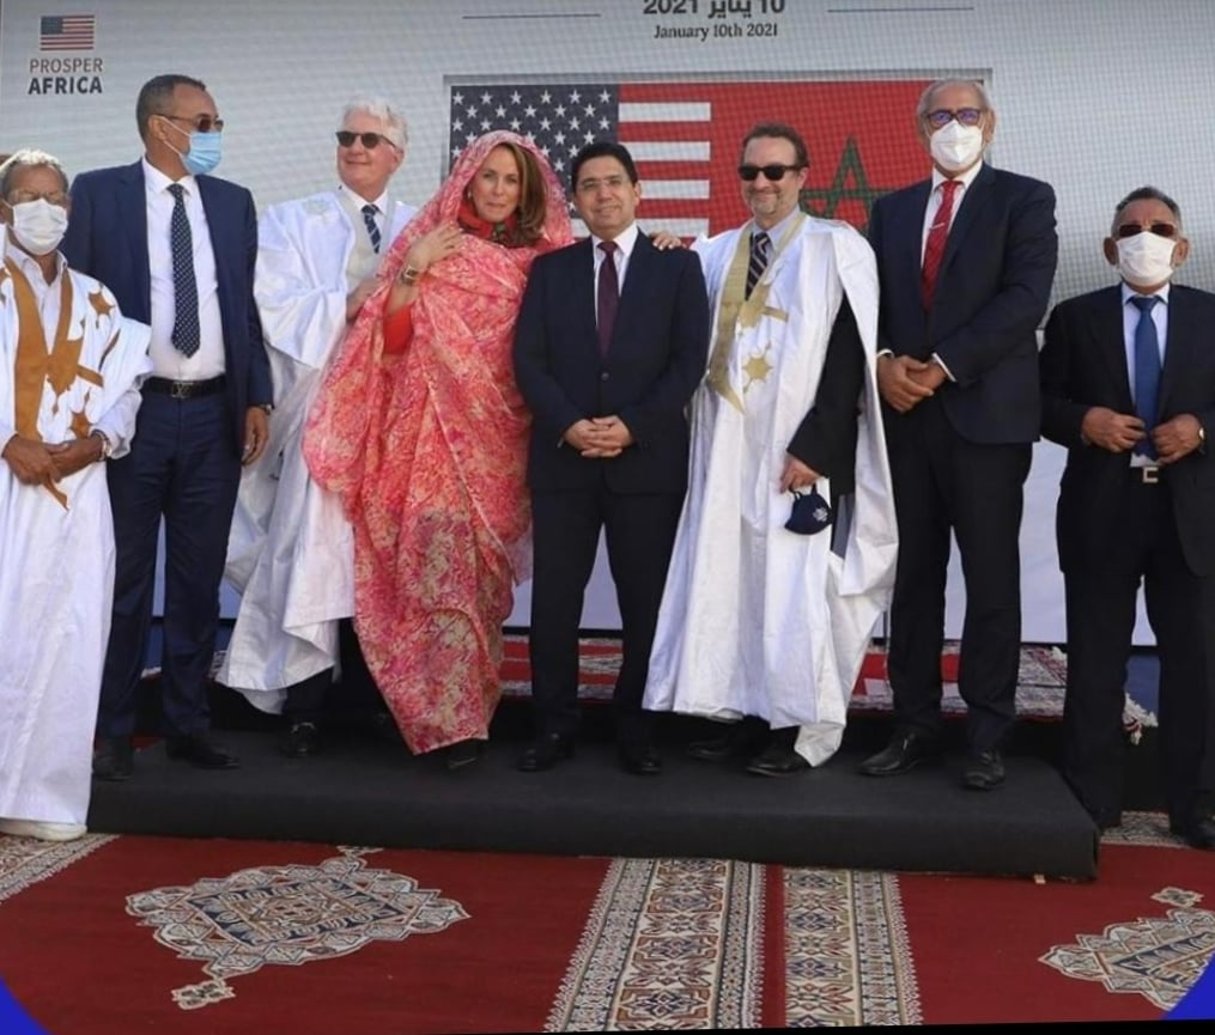 Le ministre des Affaires étrangères marocain Nasser Bourita (au centre), entouré de David Schenker, secrétaire d’Etat adjoint américain en charge du Moyen-Orient, et de David Fischer (à g.), ambassadeur des Etats-Unis au Maroc, et son épouse Jennifer, à Dakhla le 11 janvier 2021. © US Embassy Morocco